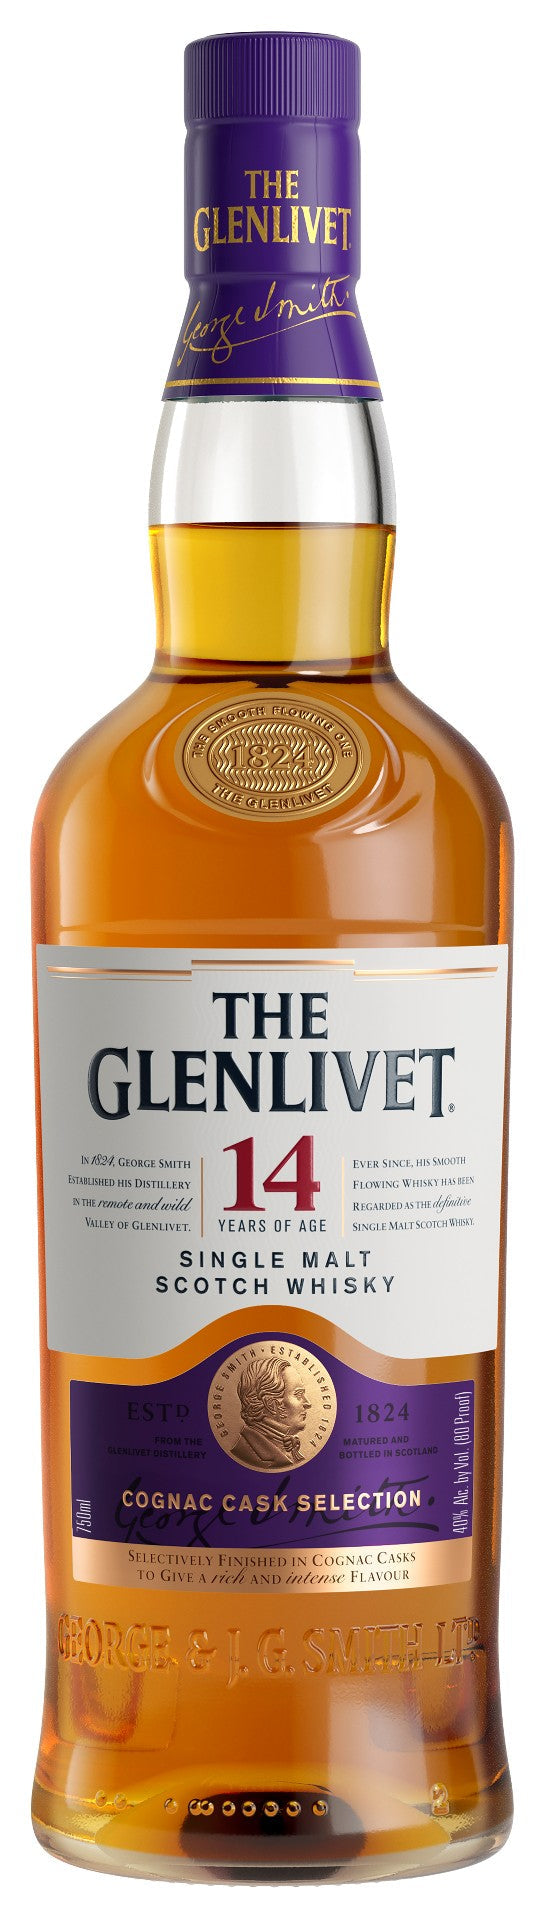 The Glenlivet 14 Year Old